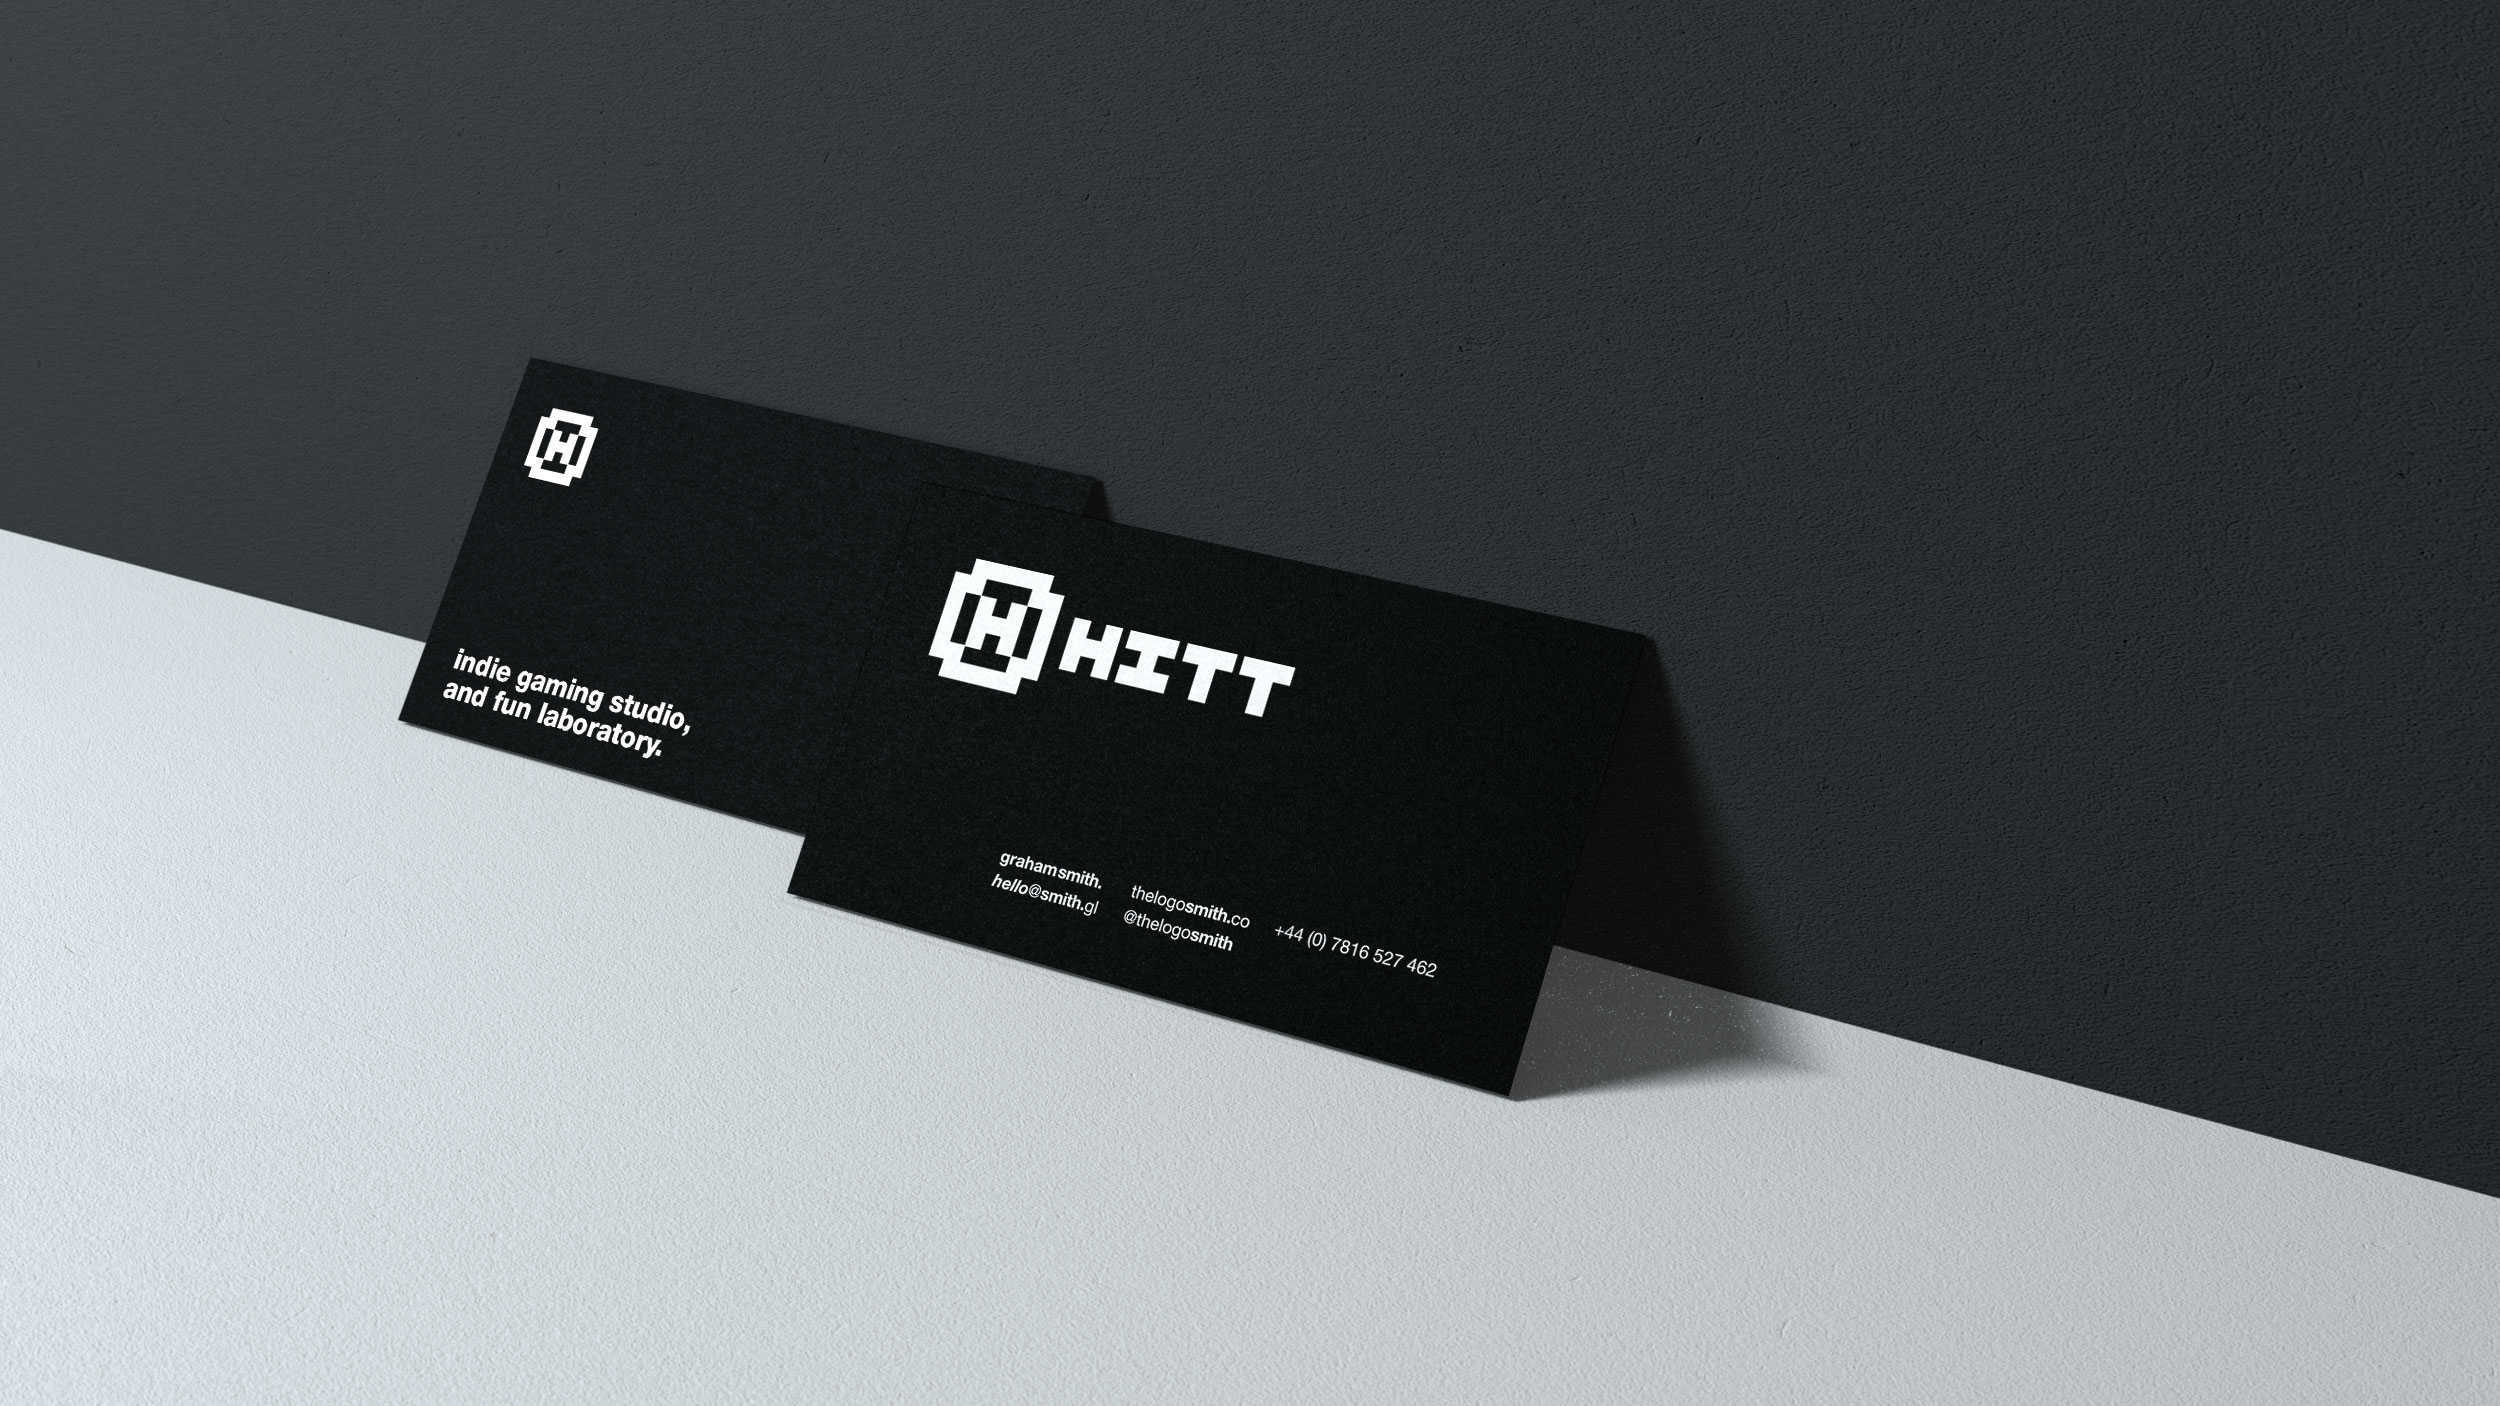 HITT gaming studio logo brand identity stationery design 3